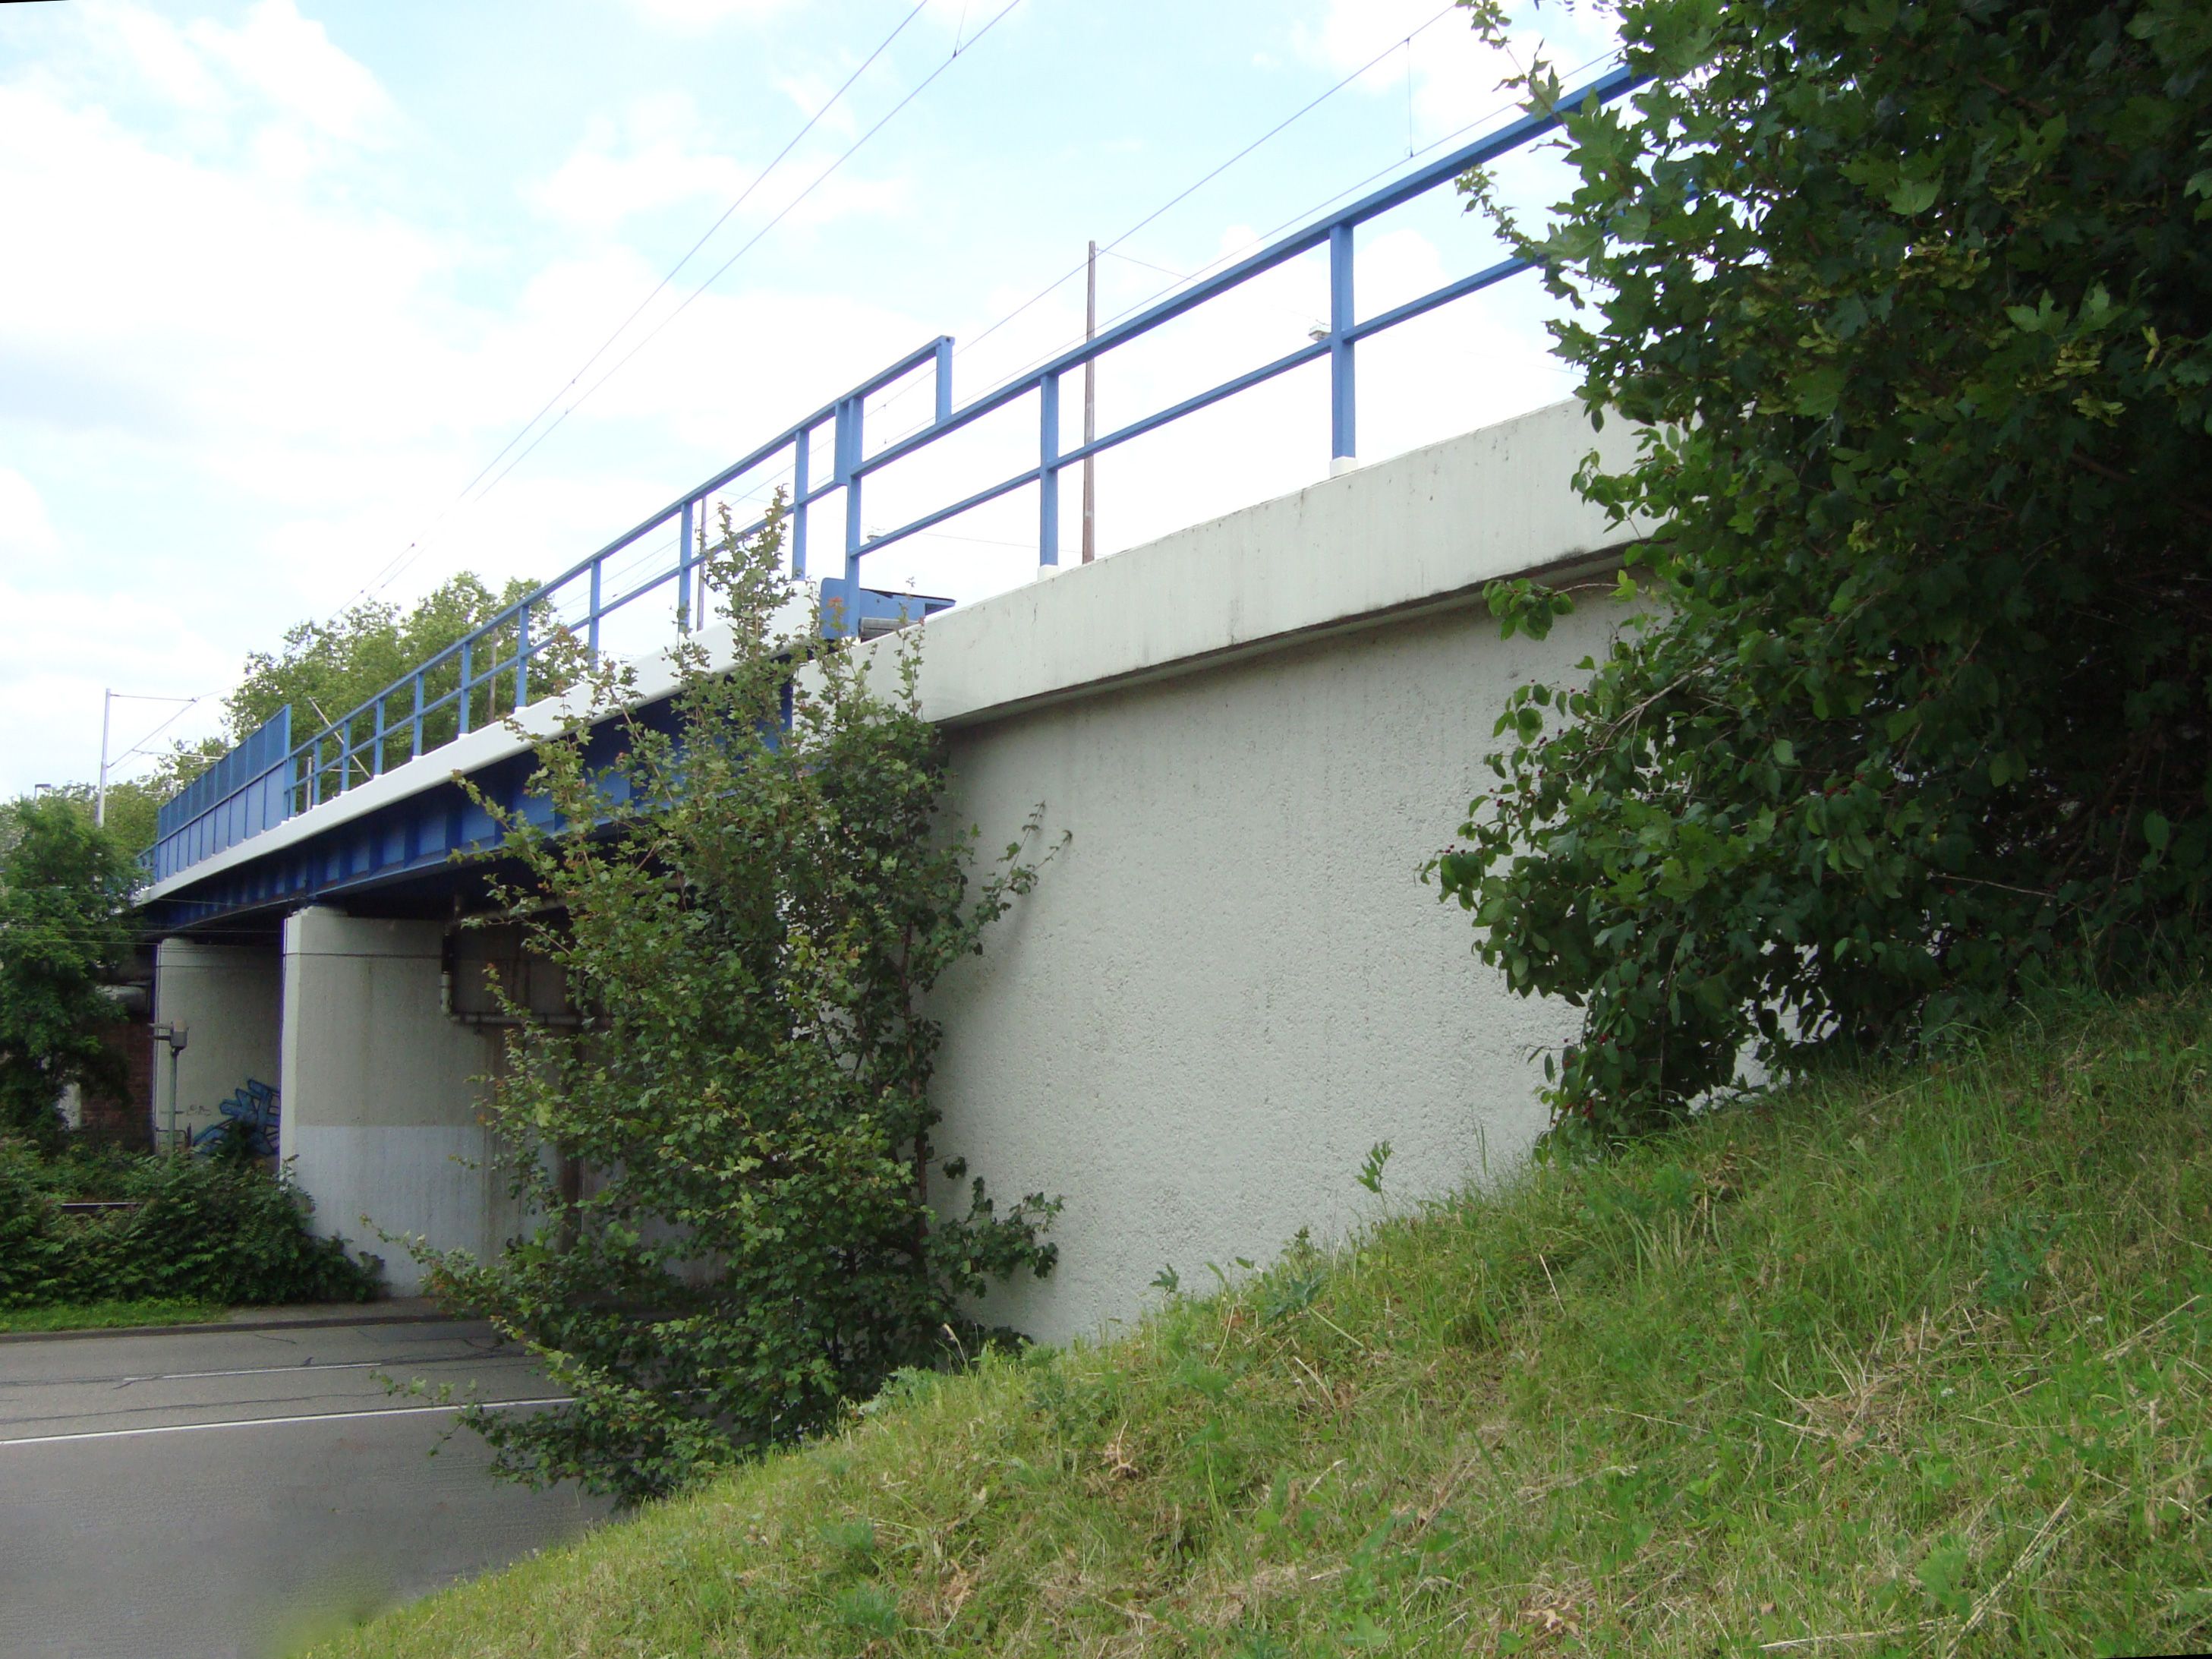 Datei:Brücke B38 Mannheim 02.jpg